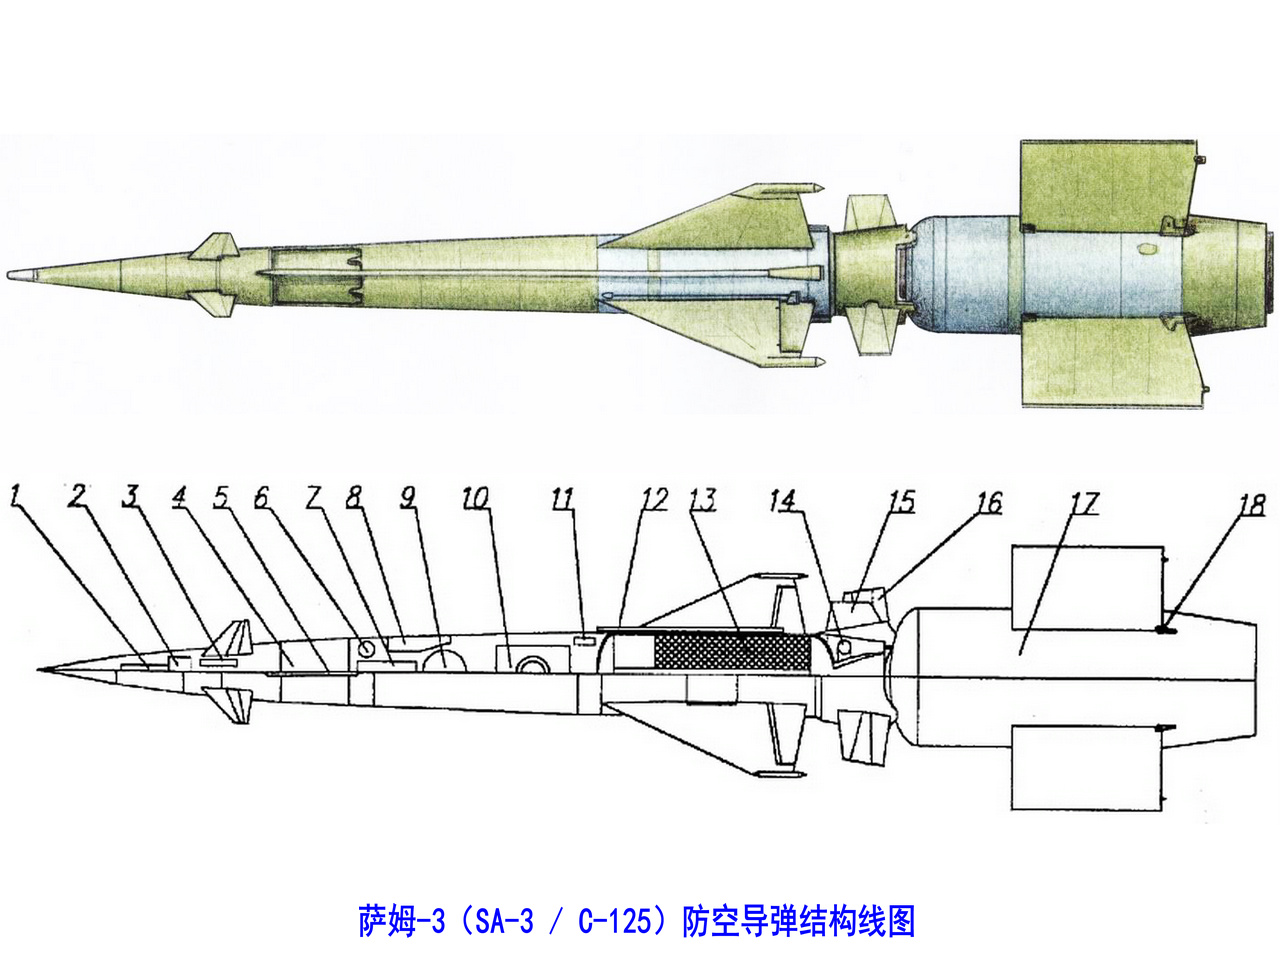 薩姆-3防空飛彈結構線圖